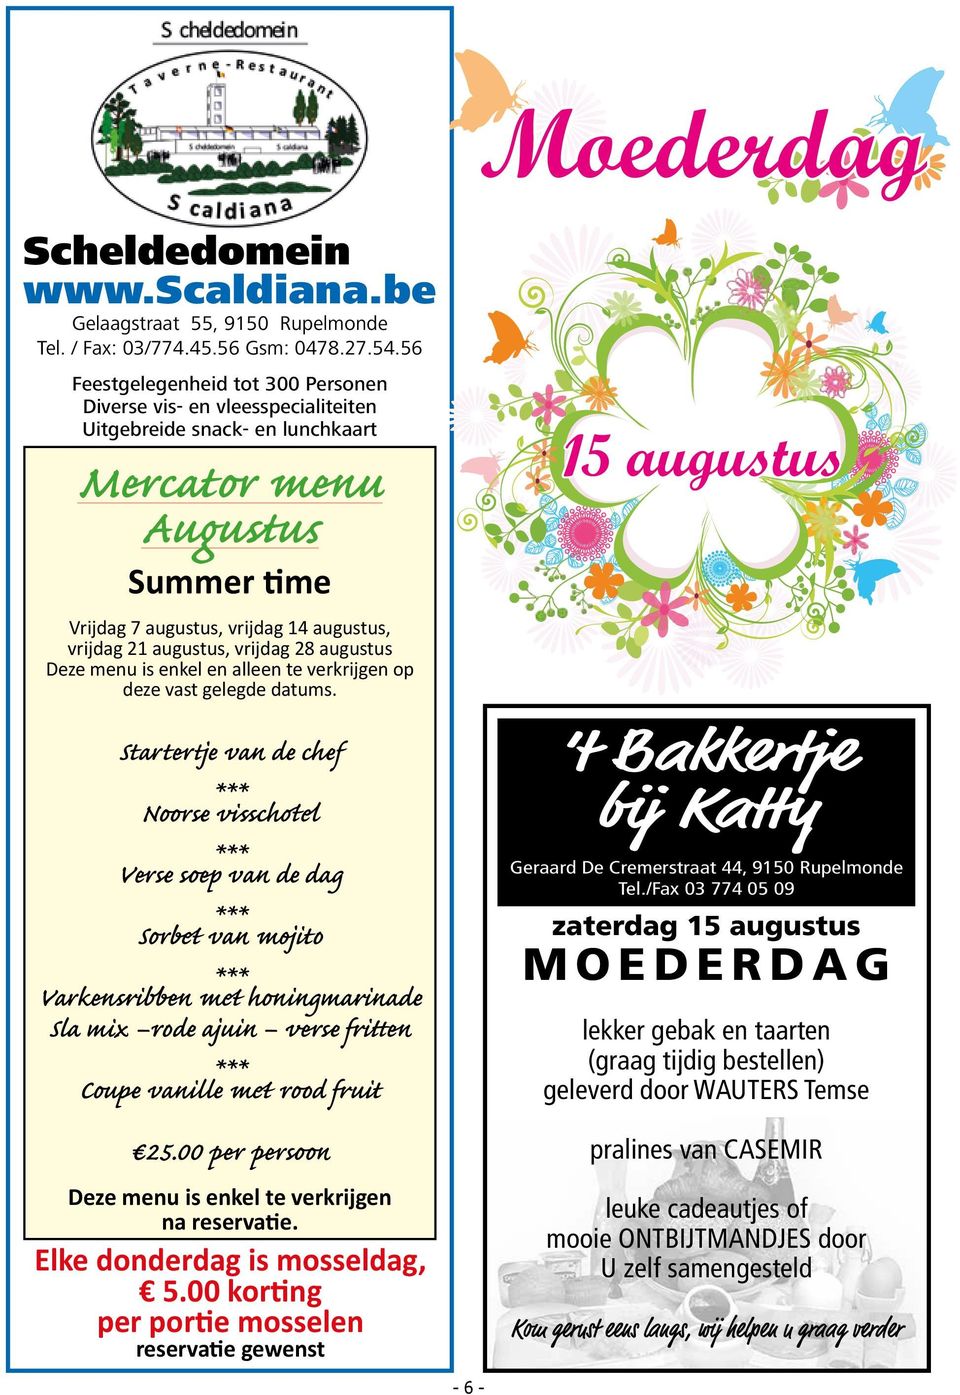 augustus, vrijdag 28 augustus Deze menu is enkel en alleen te verkrijgen op deze vast gelegde datums.